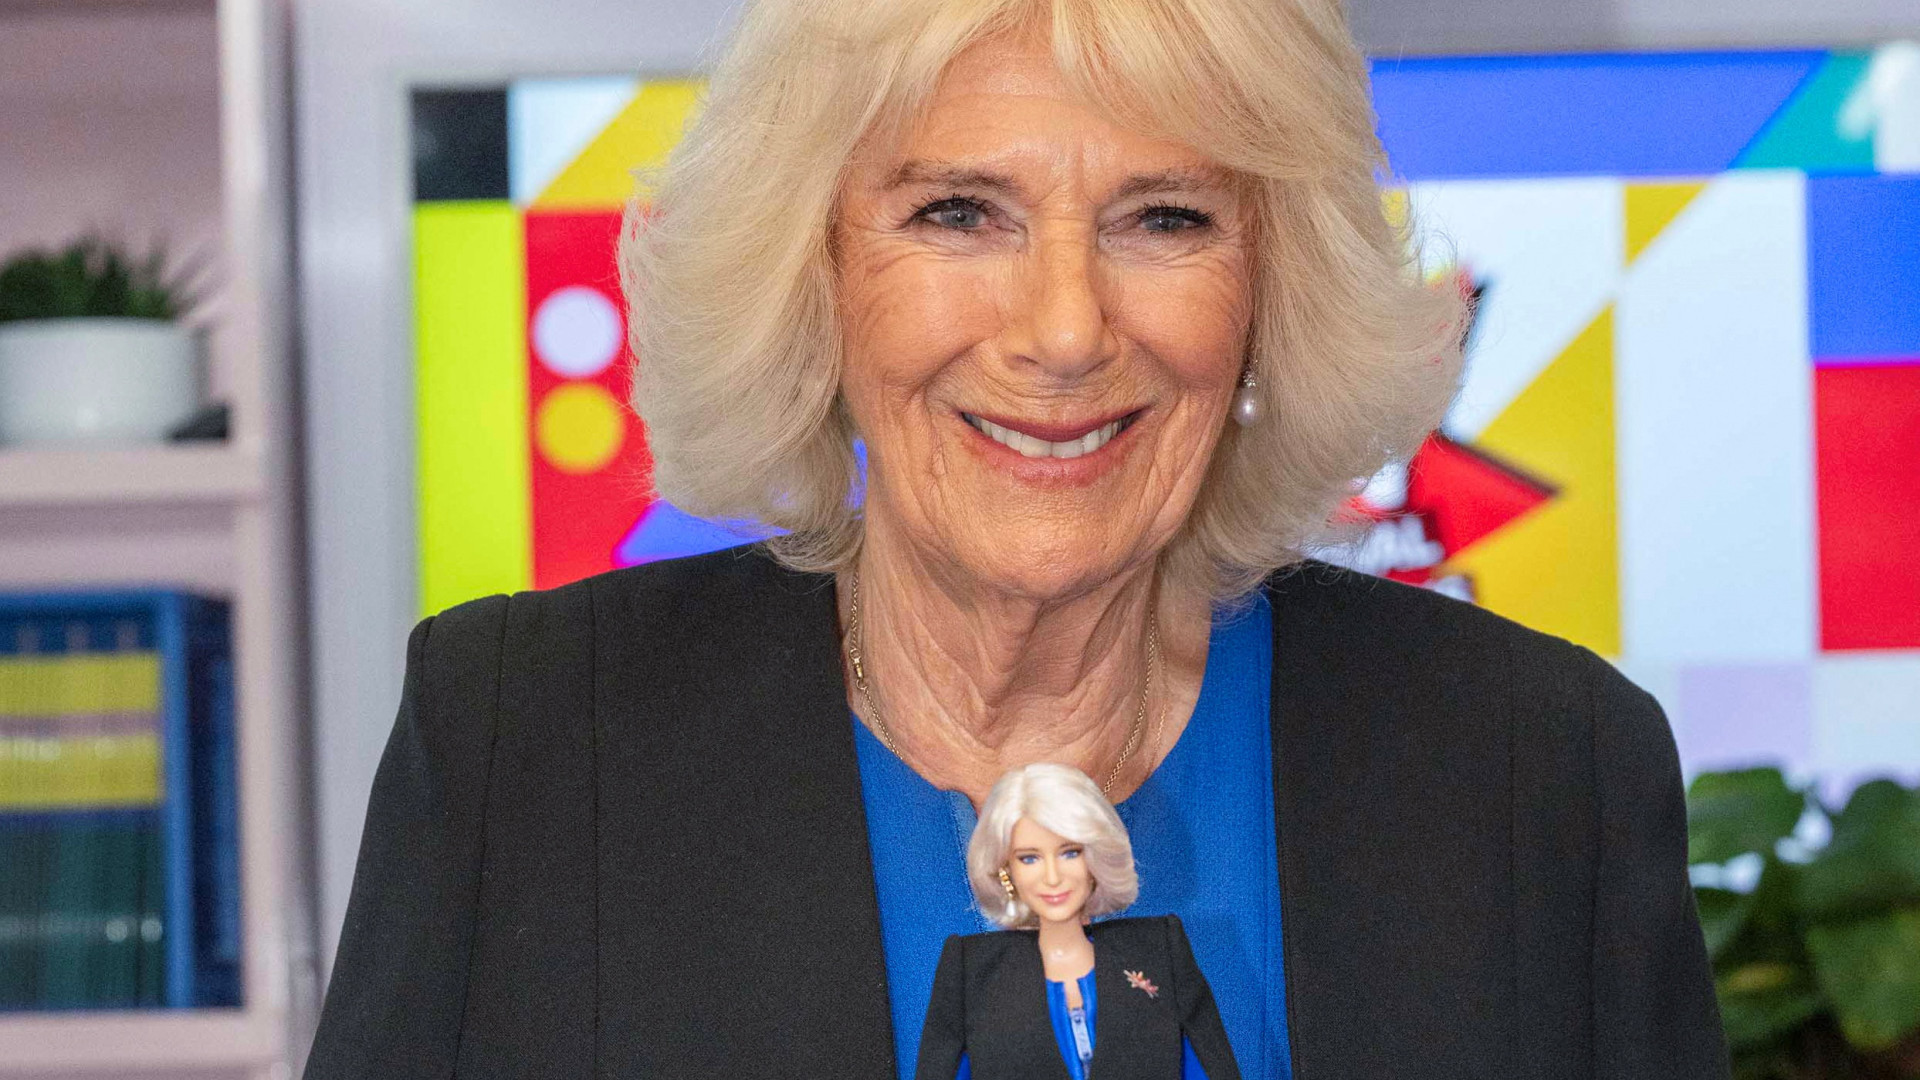 Rainha Camilla ganha uma boneca barbie em sua homenagem, veja